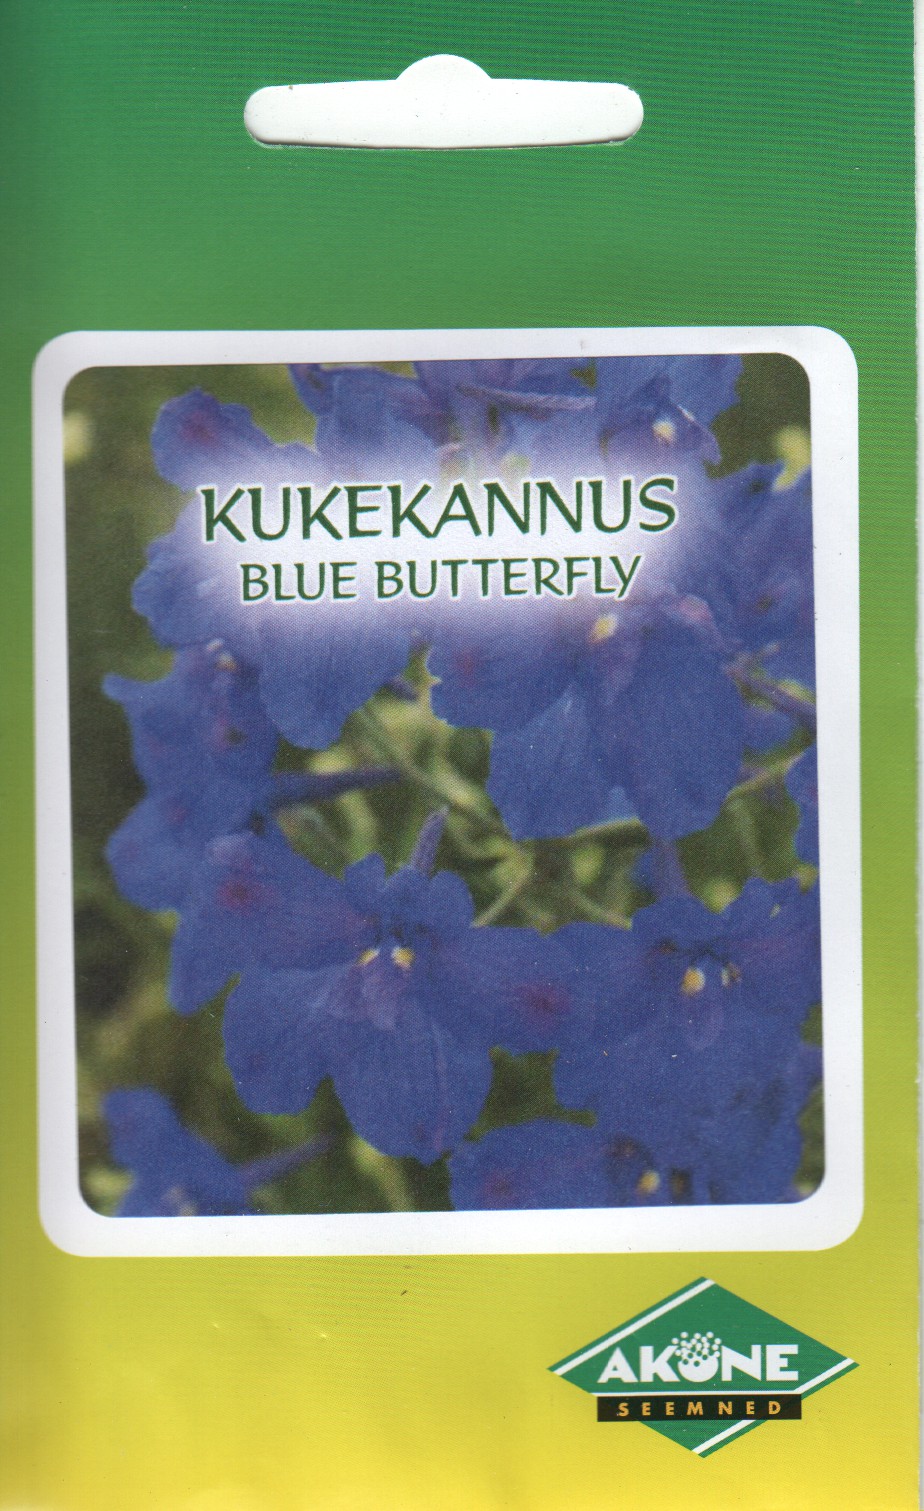 Suureõiene kukekannus kääbus "Blue Butterfly"